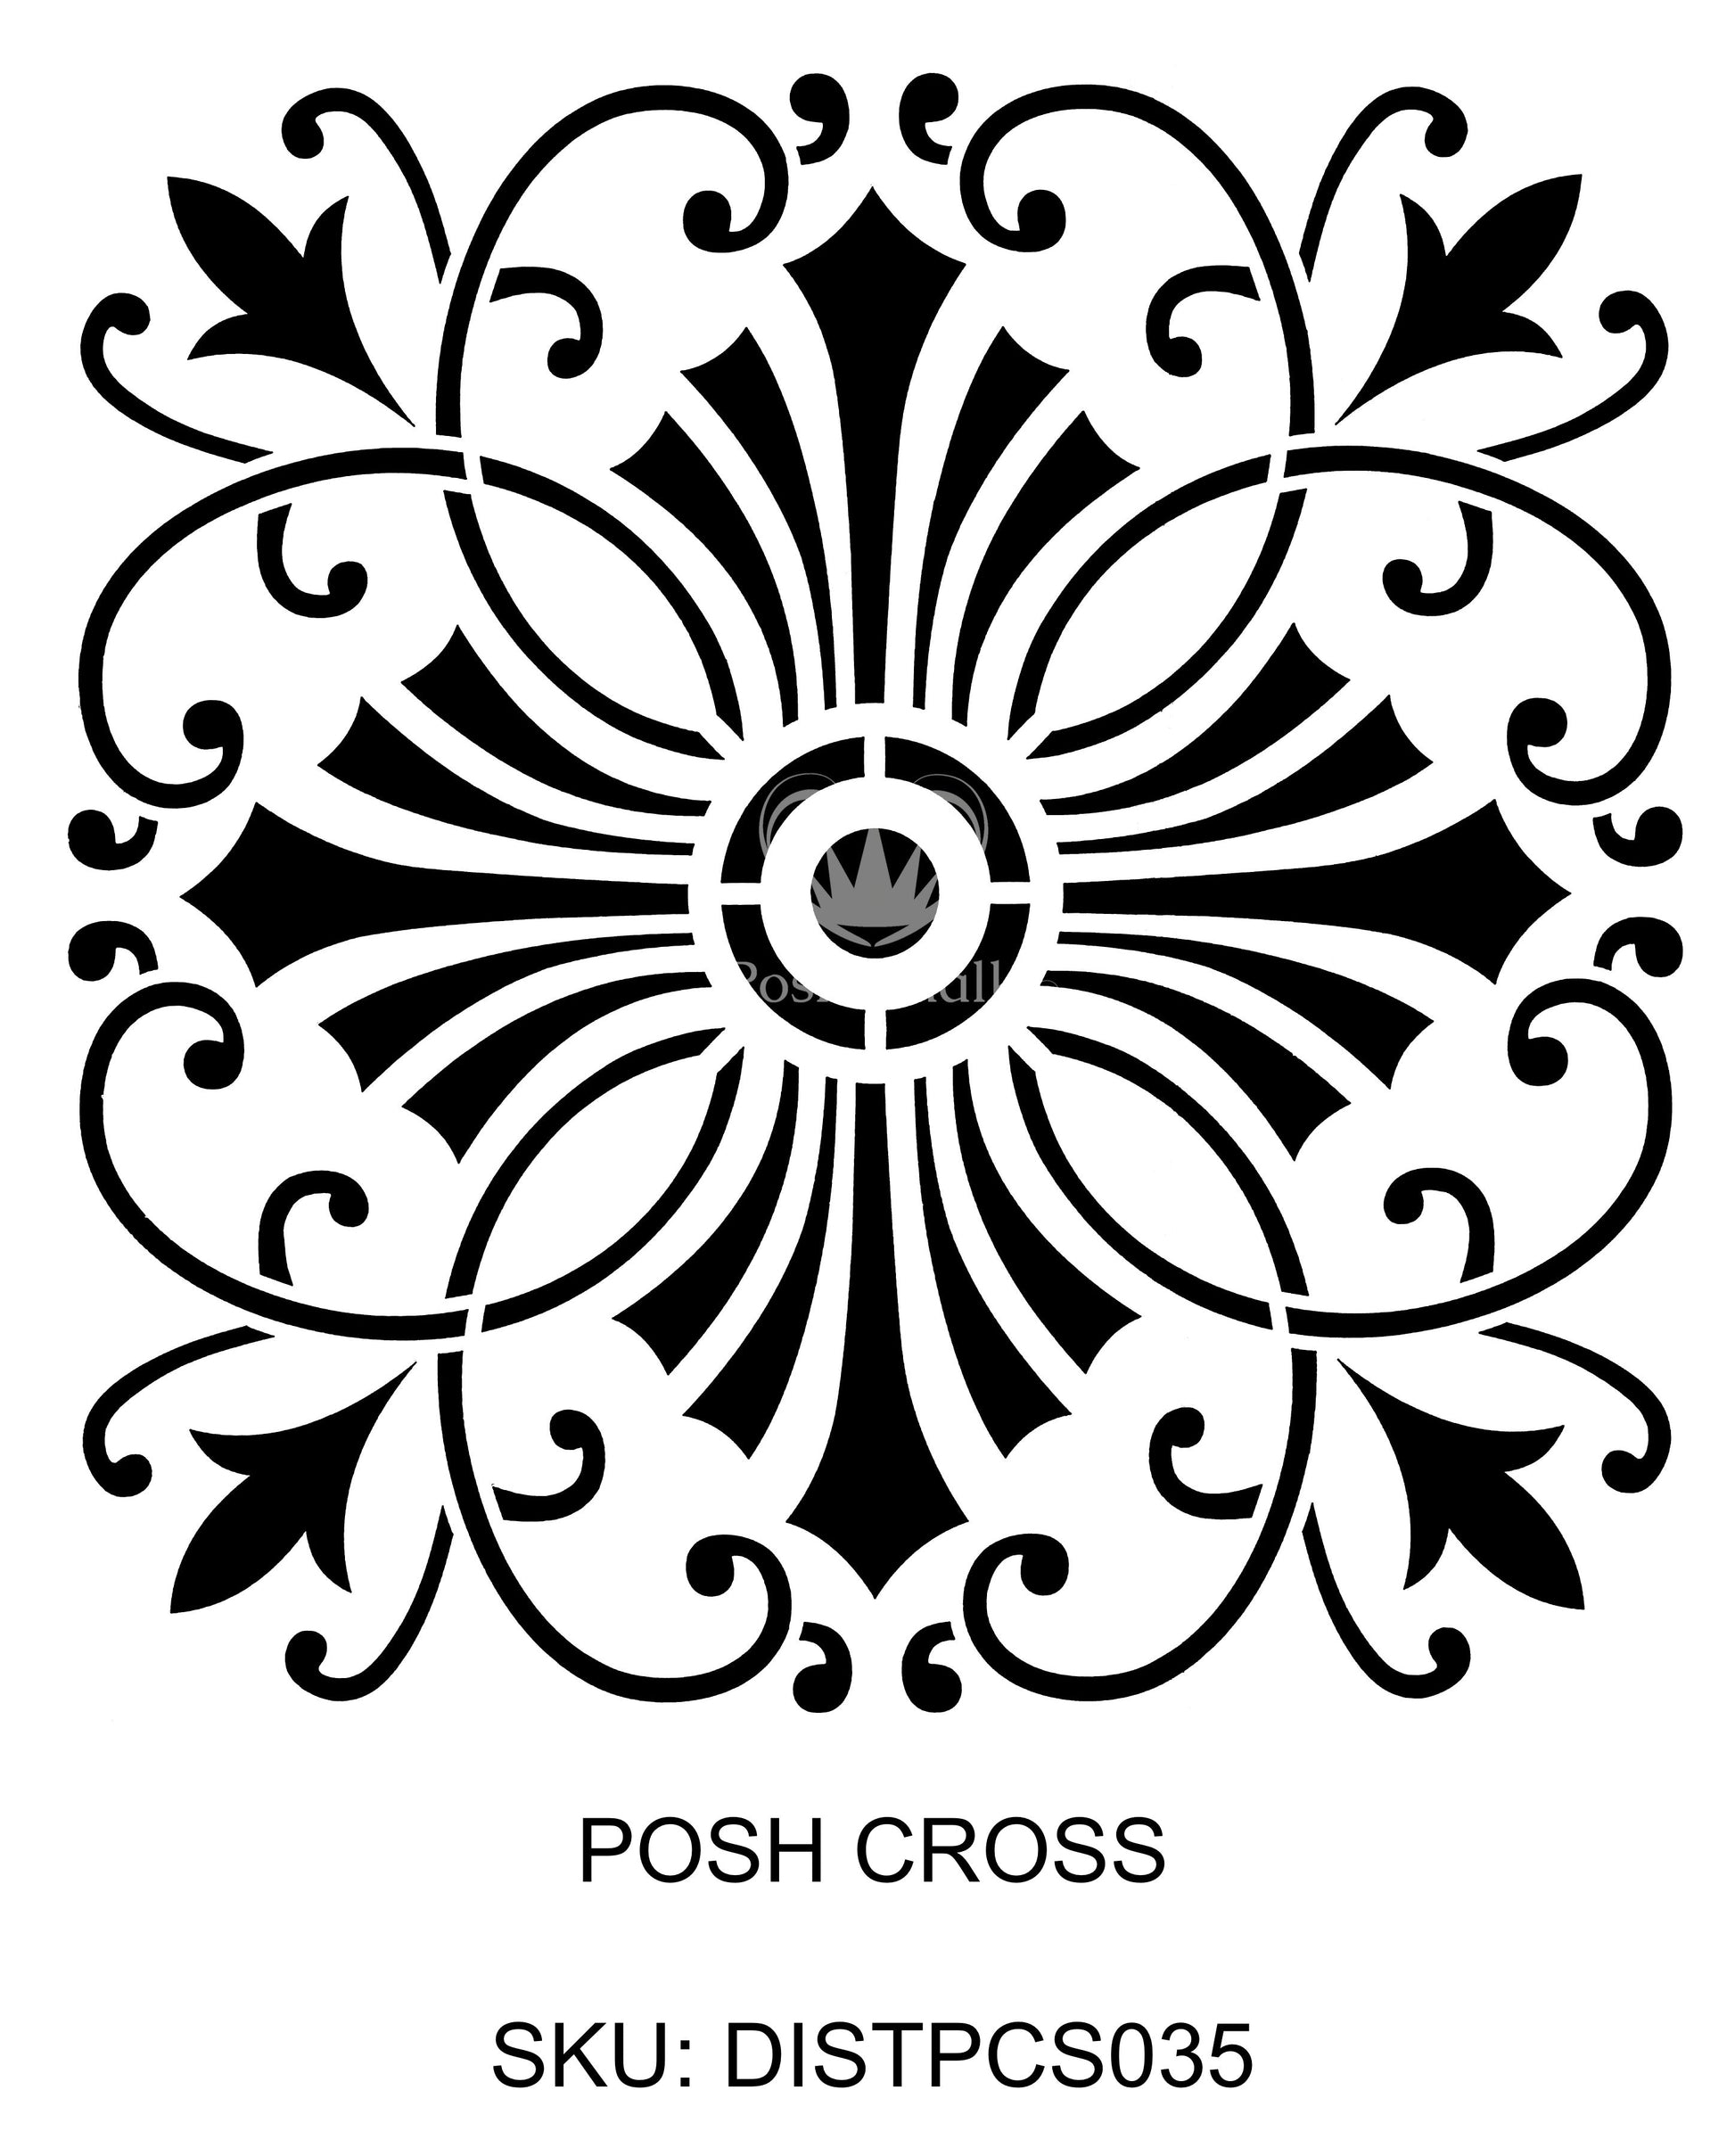 Posh Chalk Stencil Posh Cross 50x50cm New! - DISTPCS045 - Posh Chalk UK 